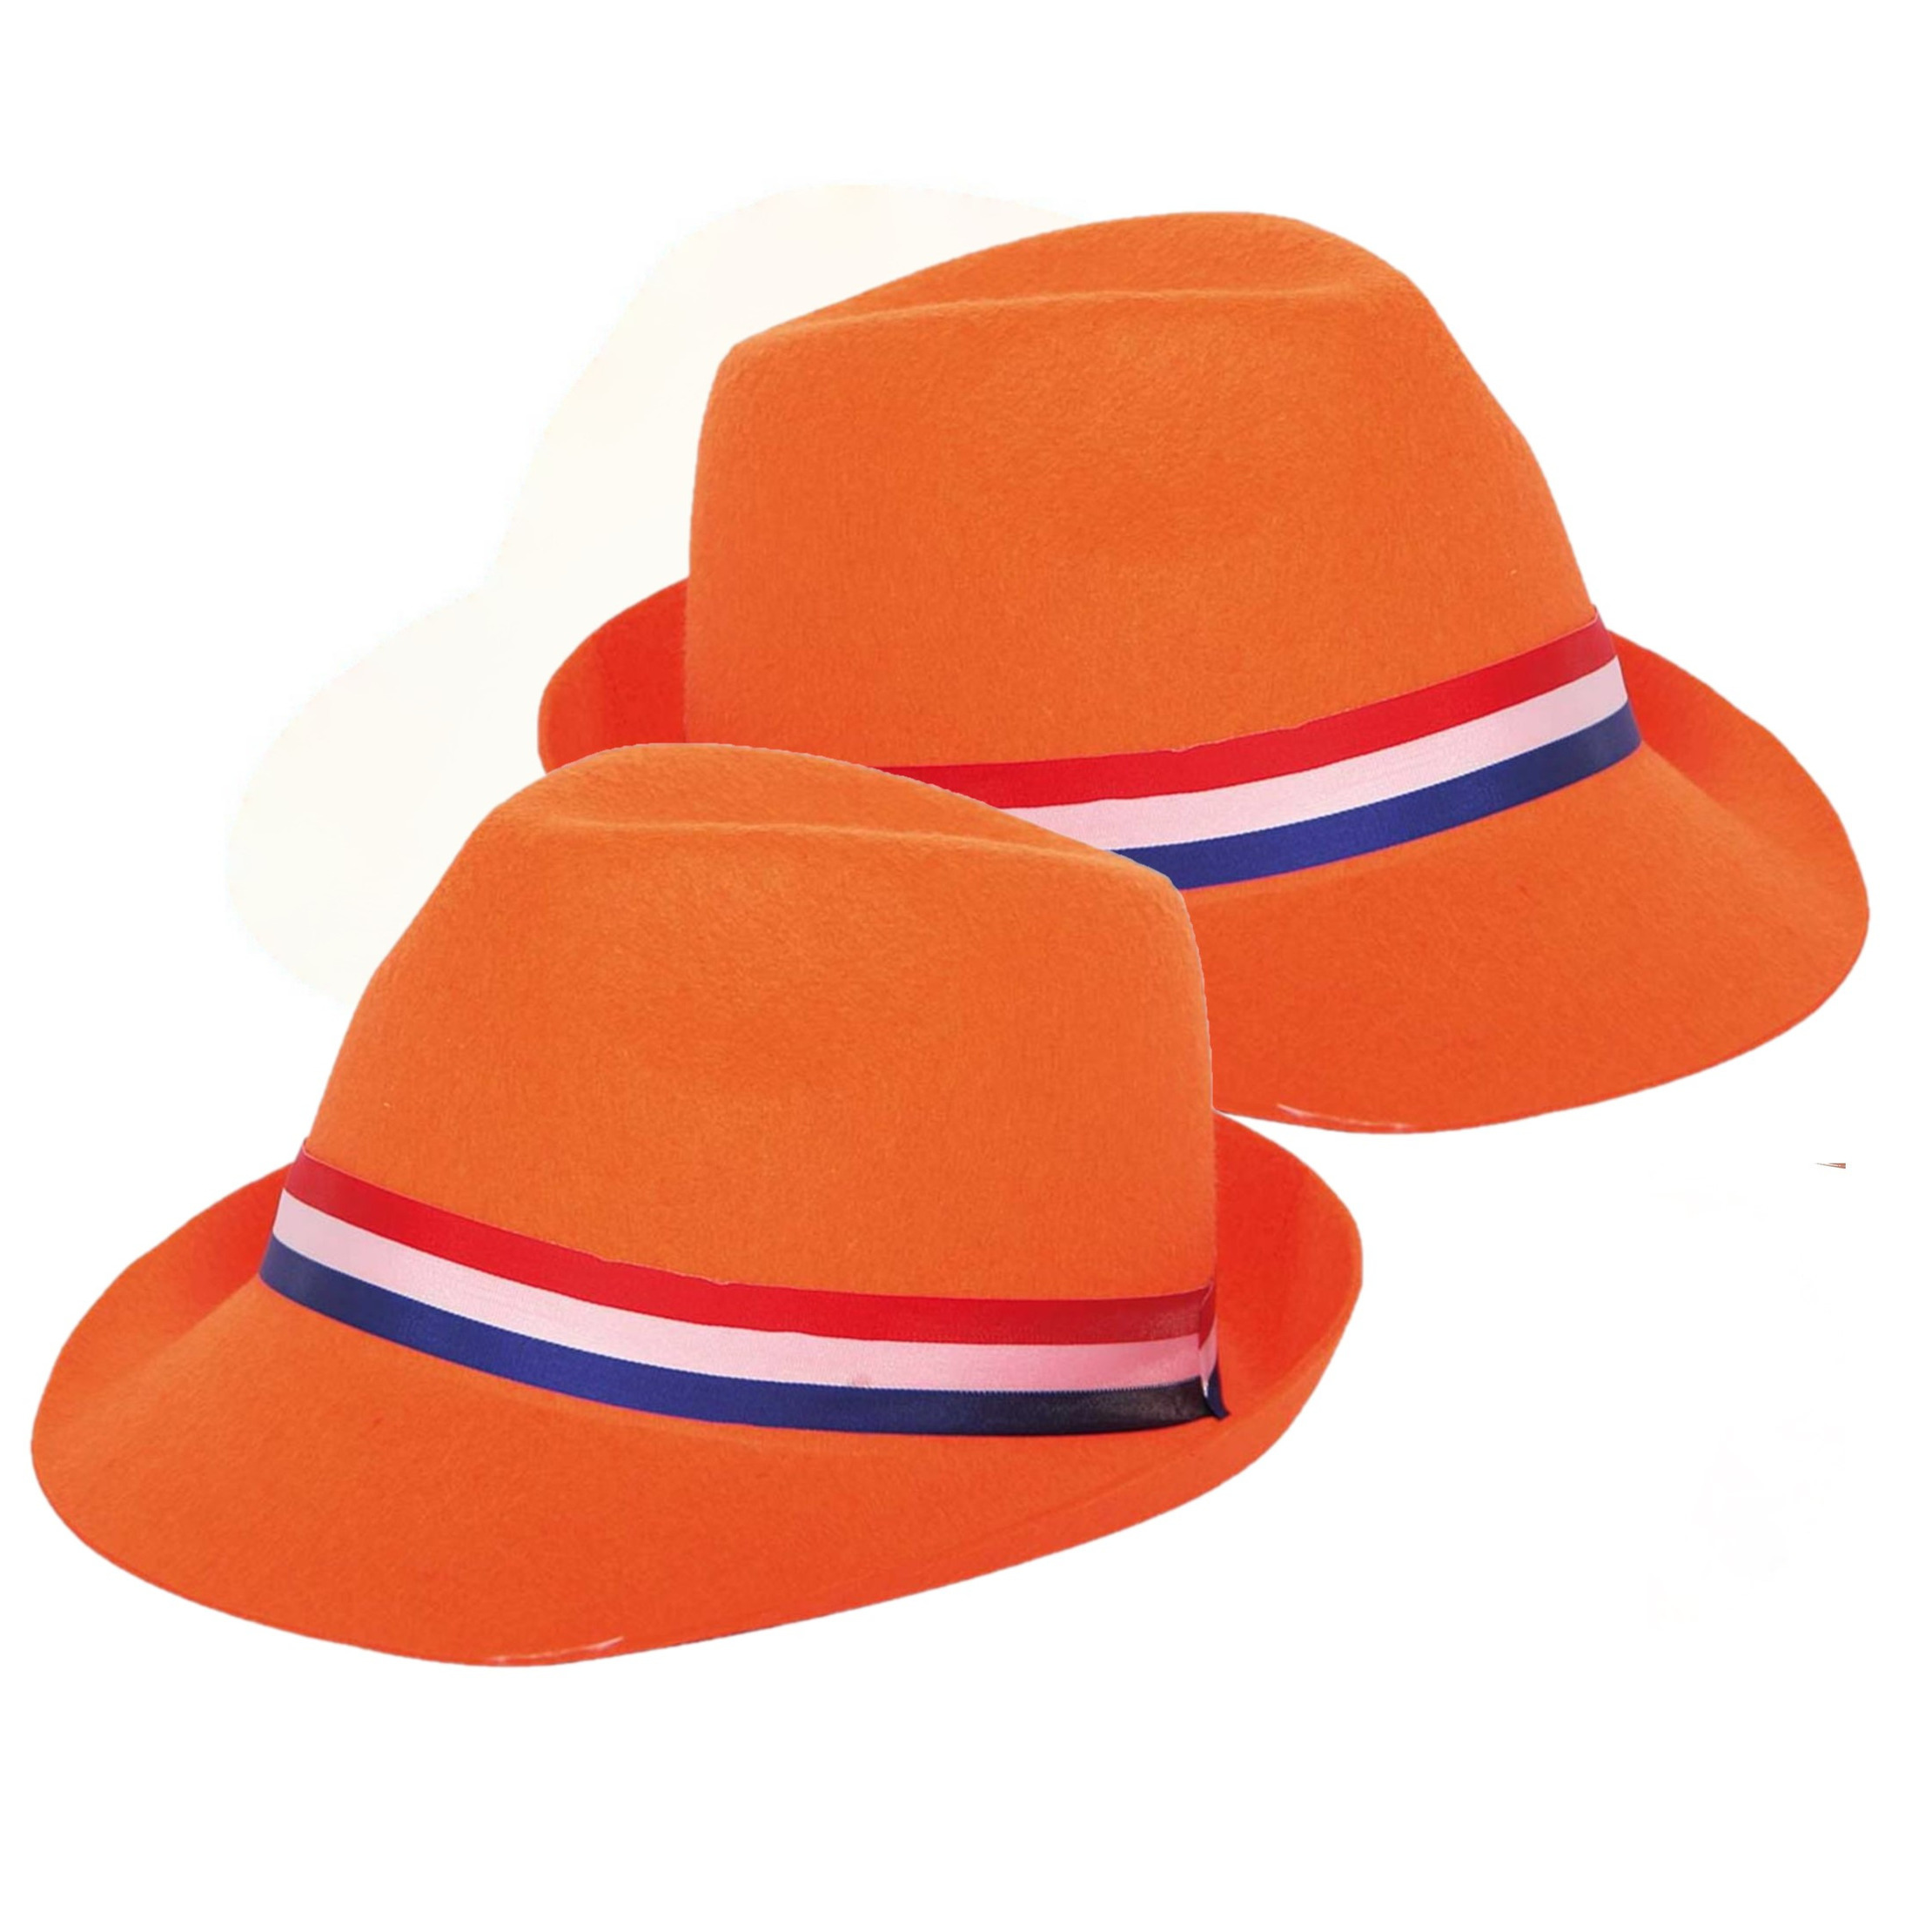 2x stuks oranje verkleedhoed / Trilby hoed voor volwassenen - Koningsdag / oranje supporters